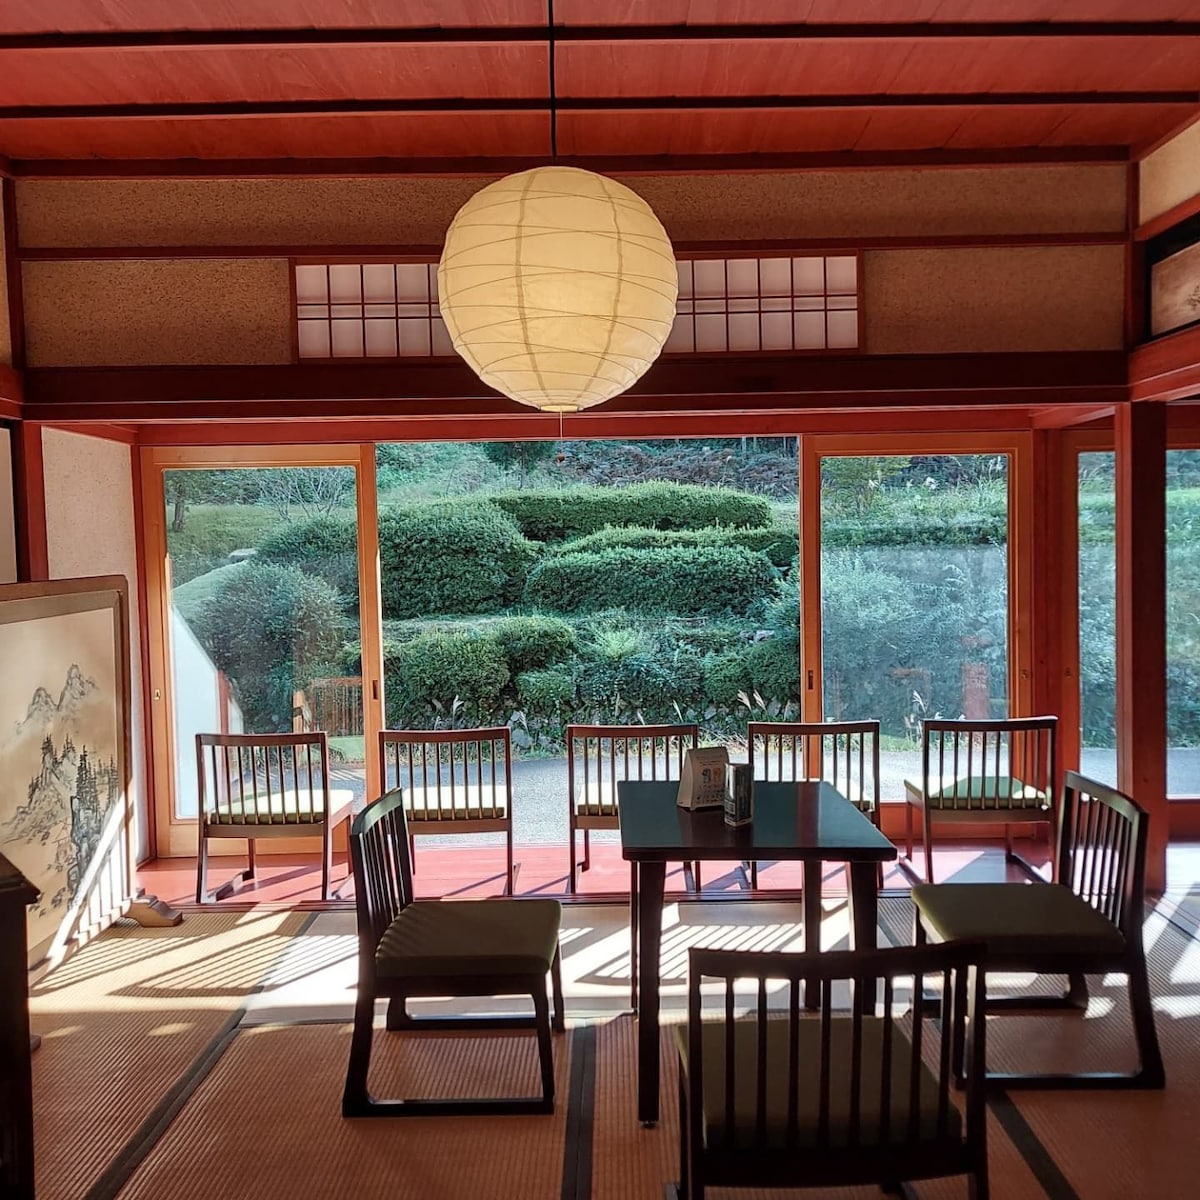 距离歌舞伎之里25分钟车程。这是一个田园诗般的山间住宅，小区里点缀着茅草。季节性